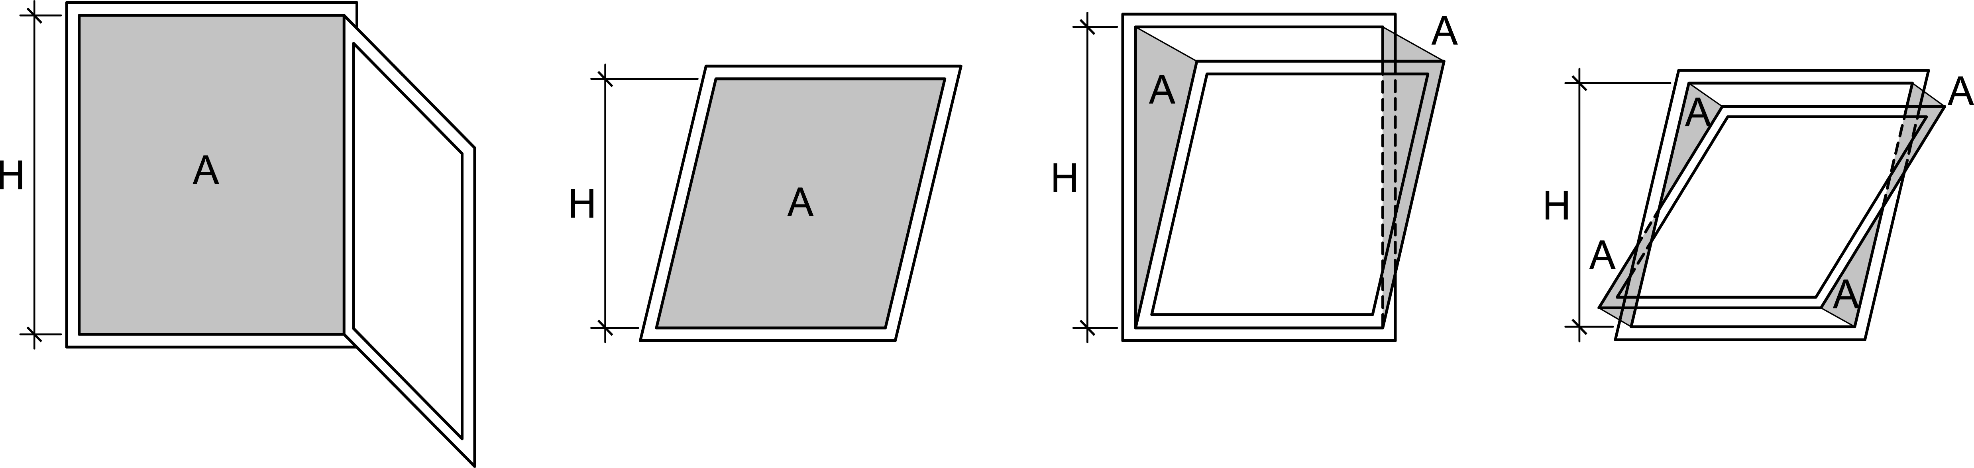 Definition von A und H für verschieden geöffnete und gekippte Fenster 